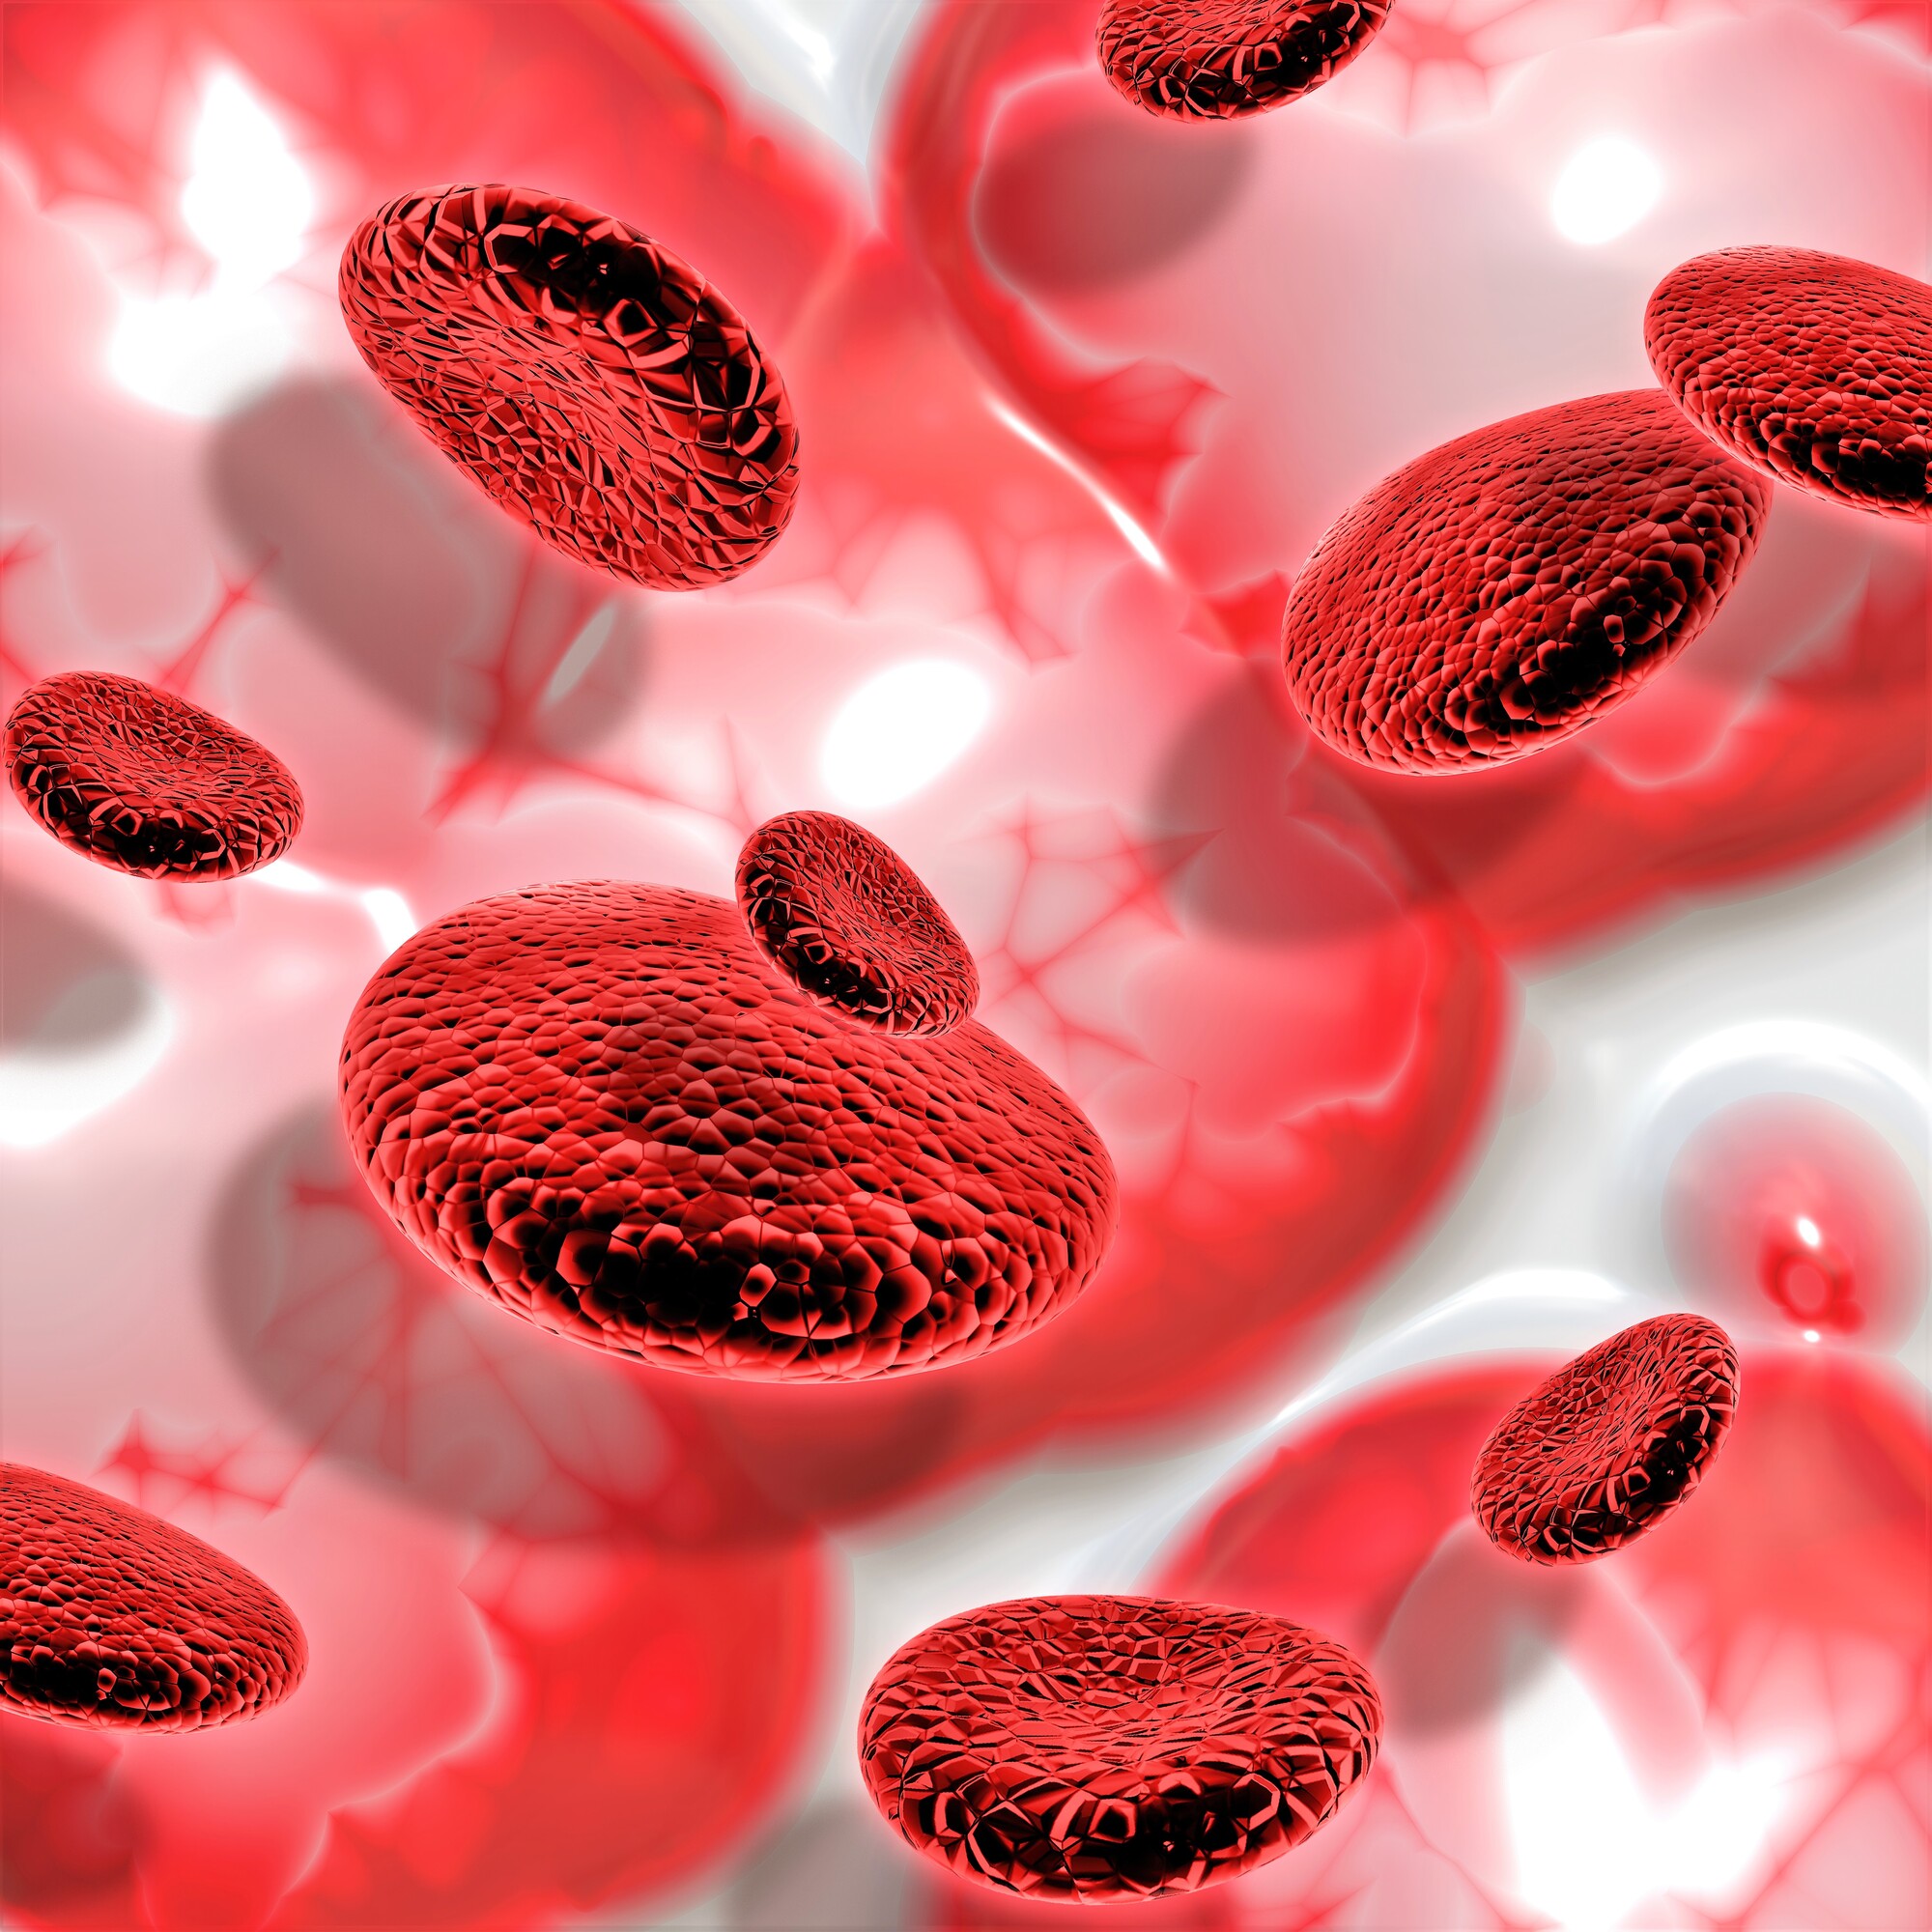 Coágulo de sangue: causas, tipos e tratamentos - Minha Vida